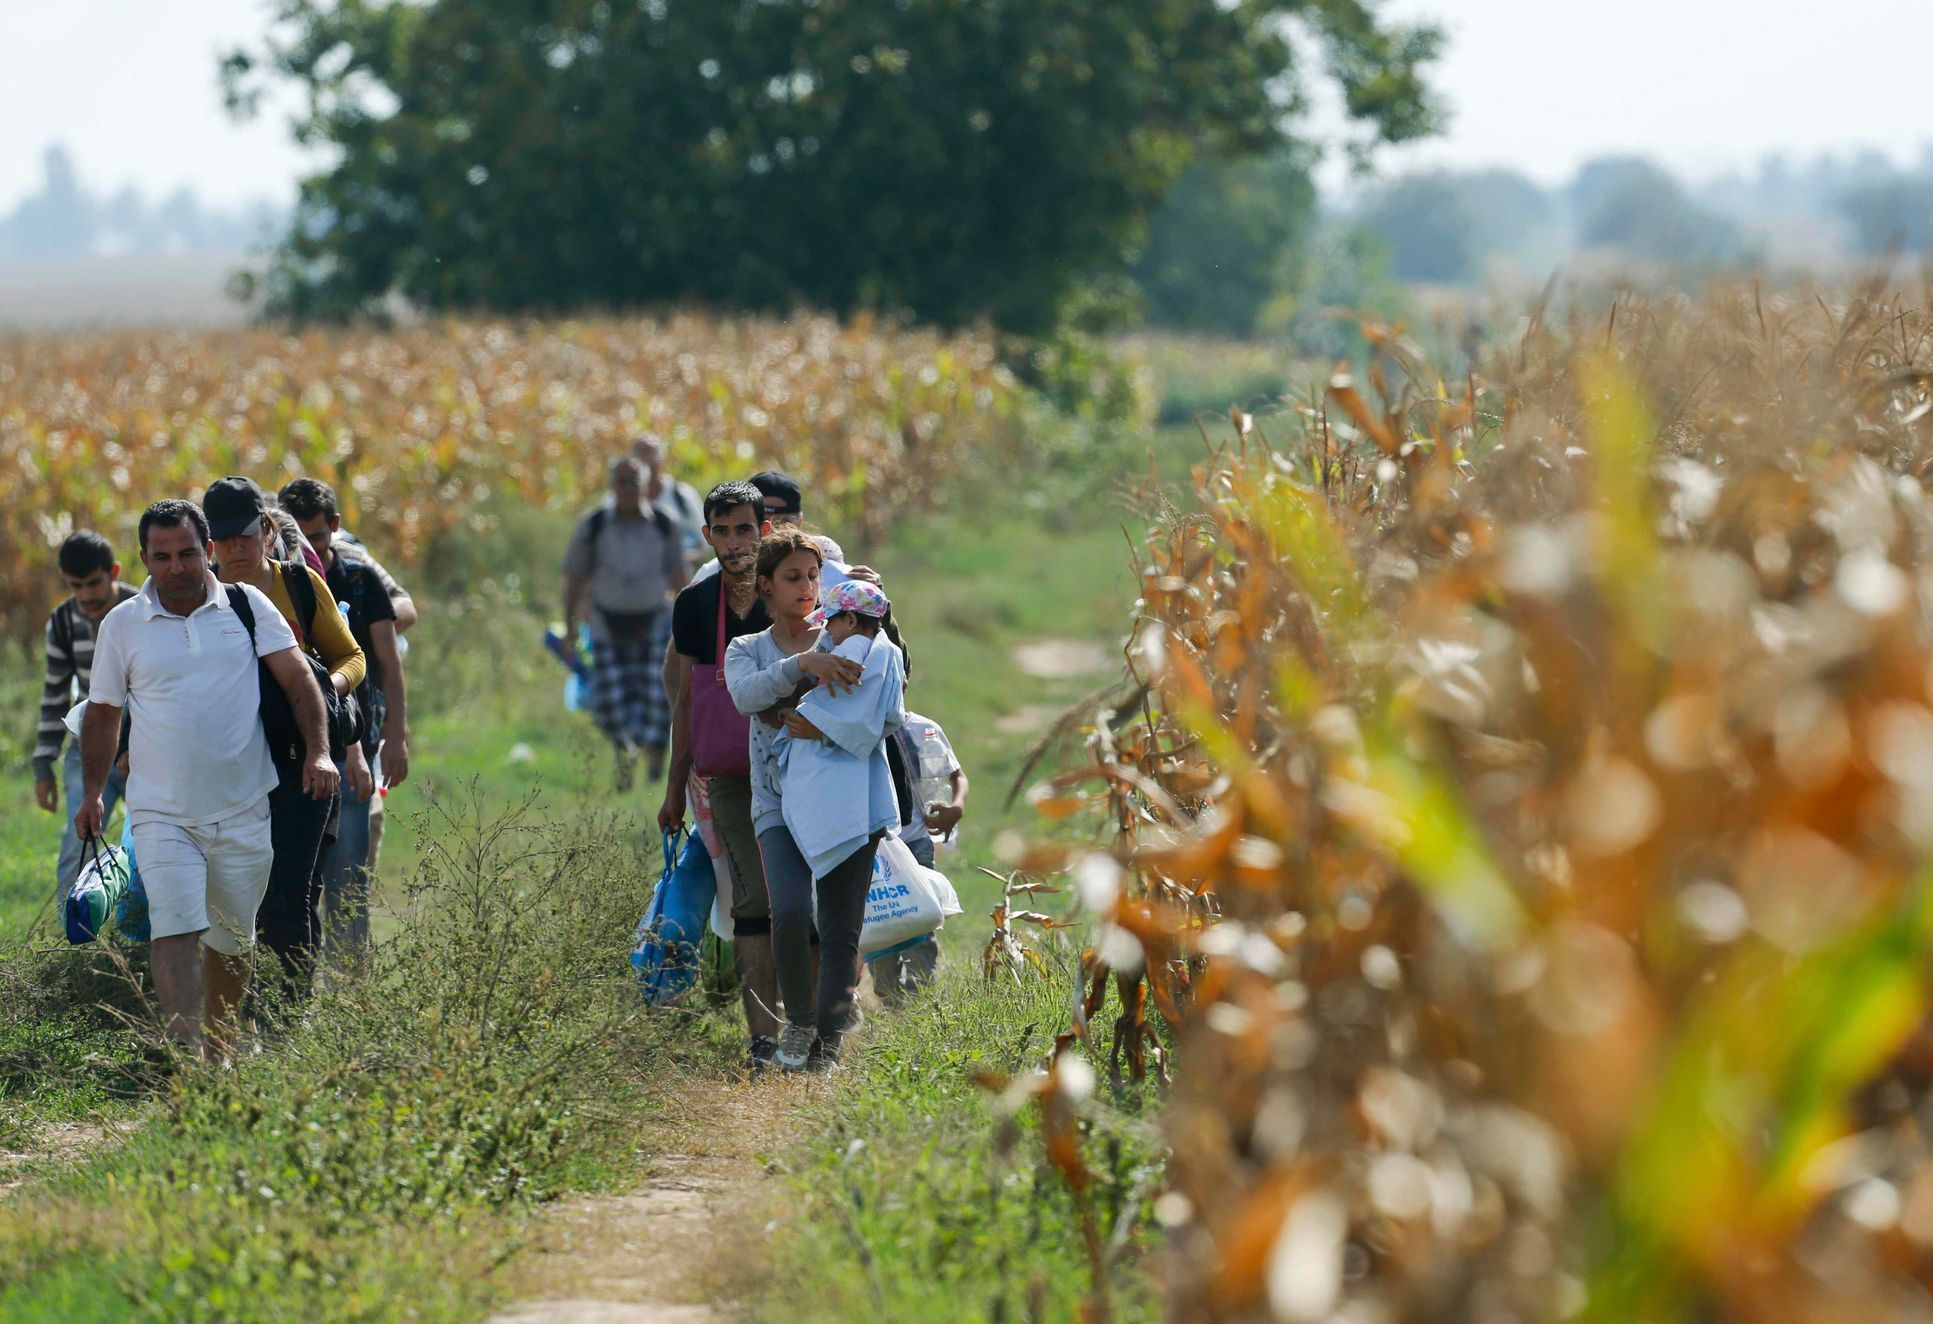 Uprchlíci přicházejí do Chorvatska mezi lány kukuřice.